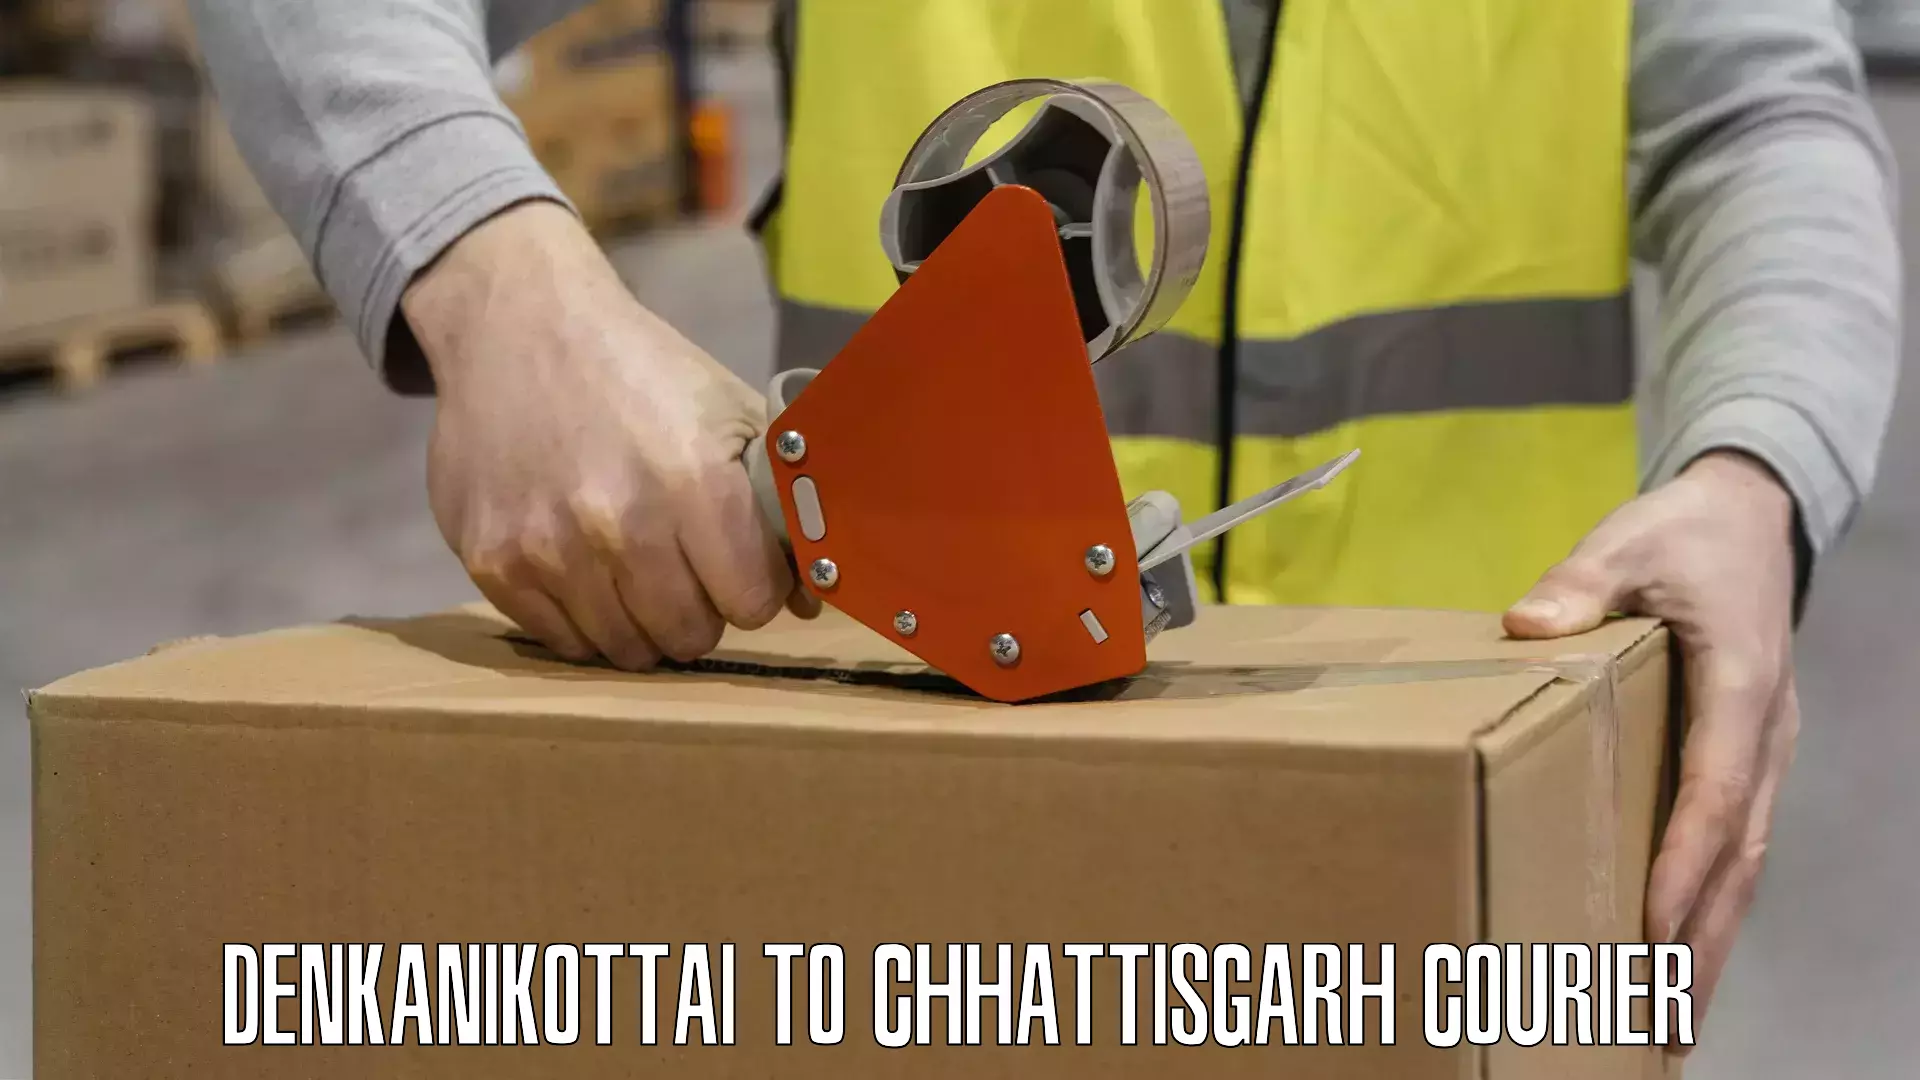 Customer-oriented courier services Denkanikottai to Mandhar